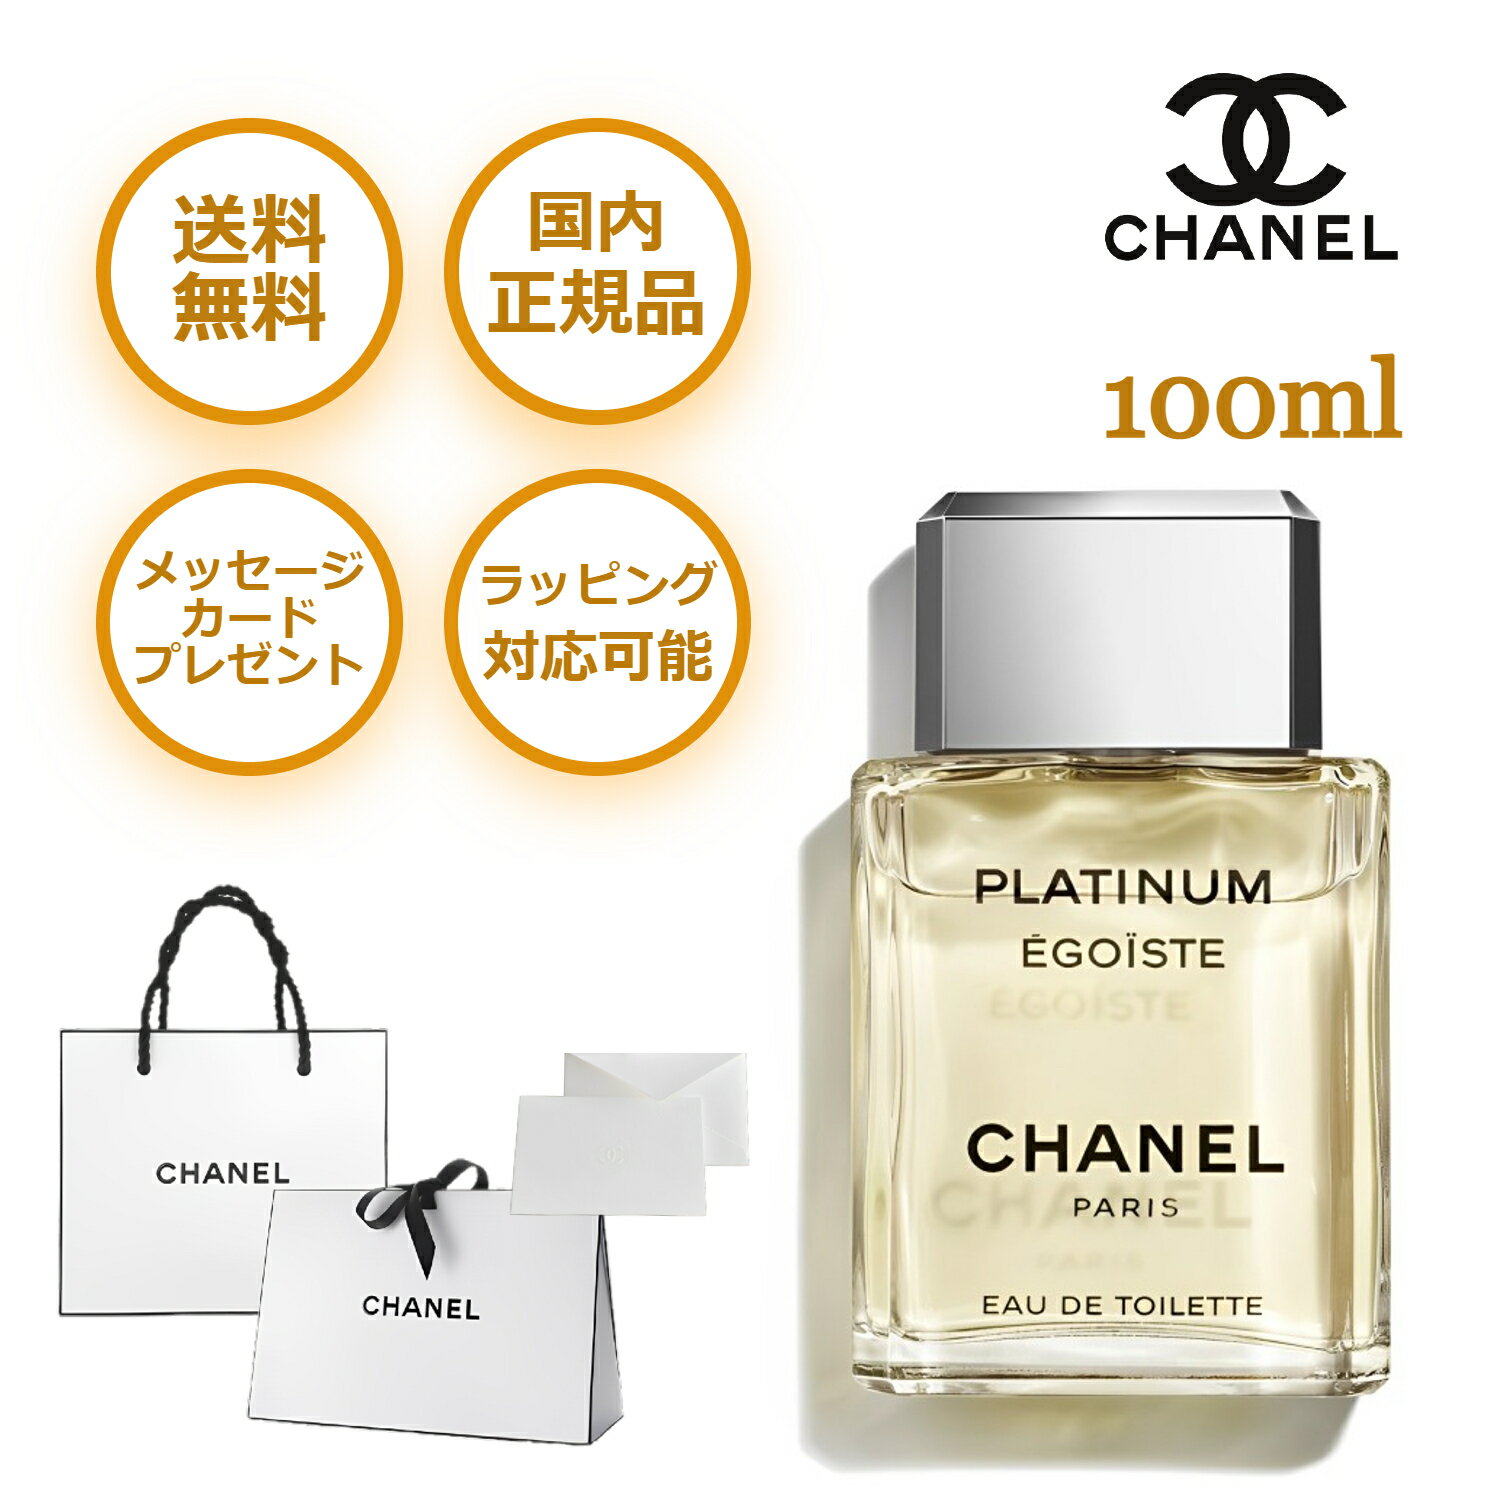 Chanel（シャネル）カテゴリの流行りランキング1位の商品